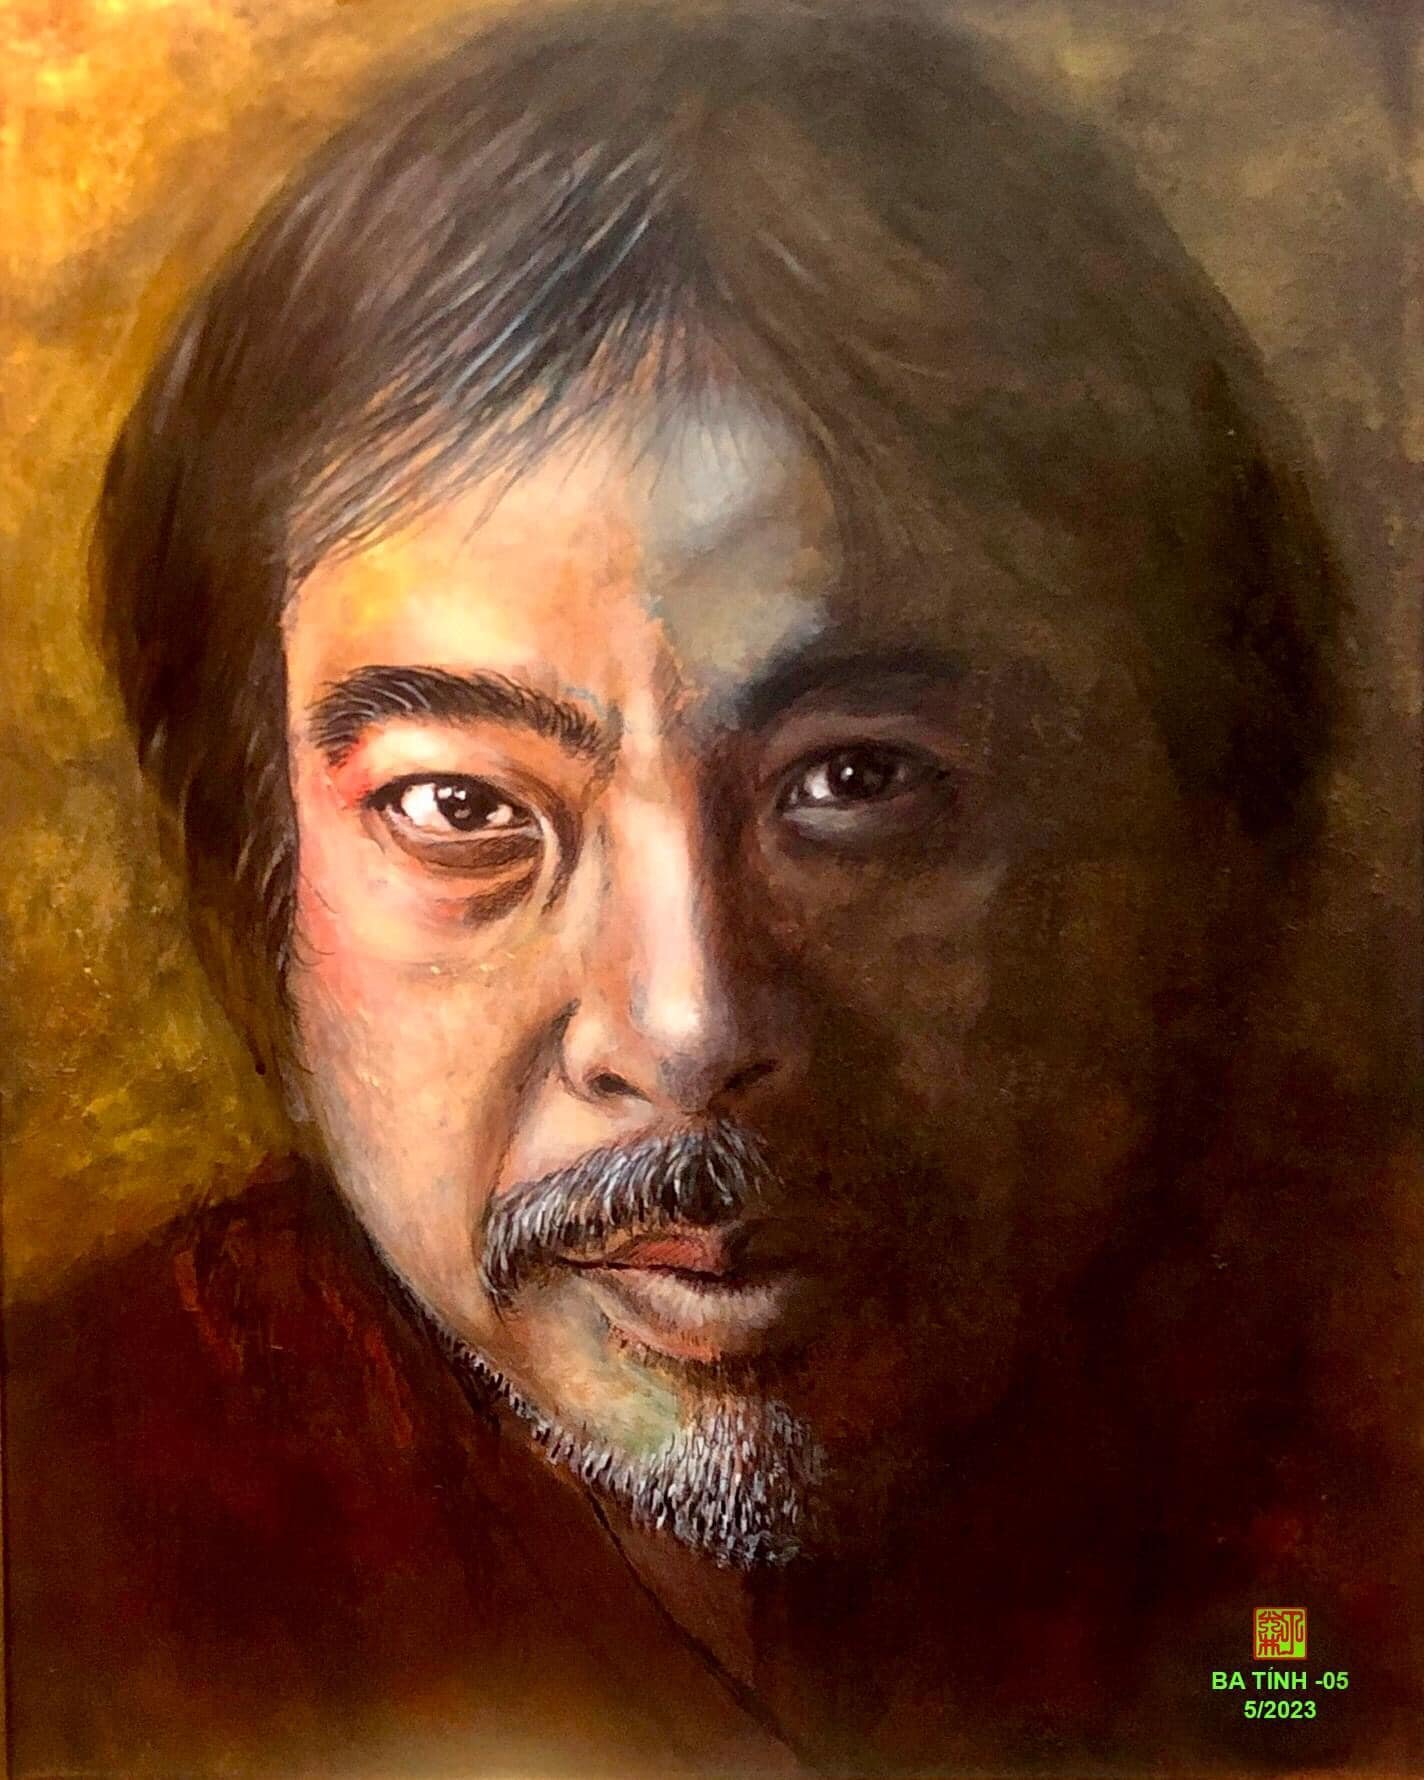 Dòng tranh chân dung của họa sỹ Đinh Quang Tỉnh (Ba Tỉnh): Nghệ thuật và sáng tạo - 5